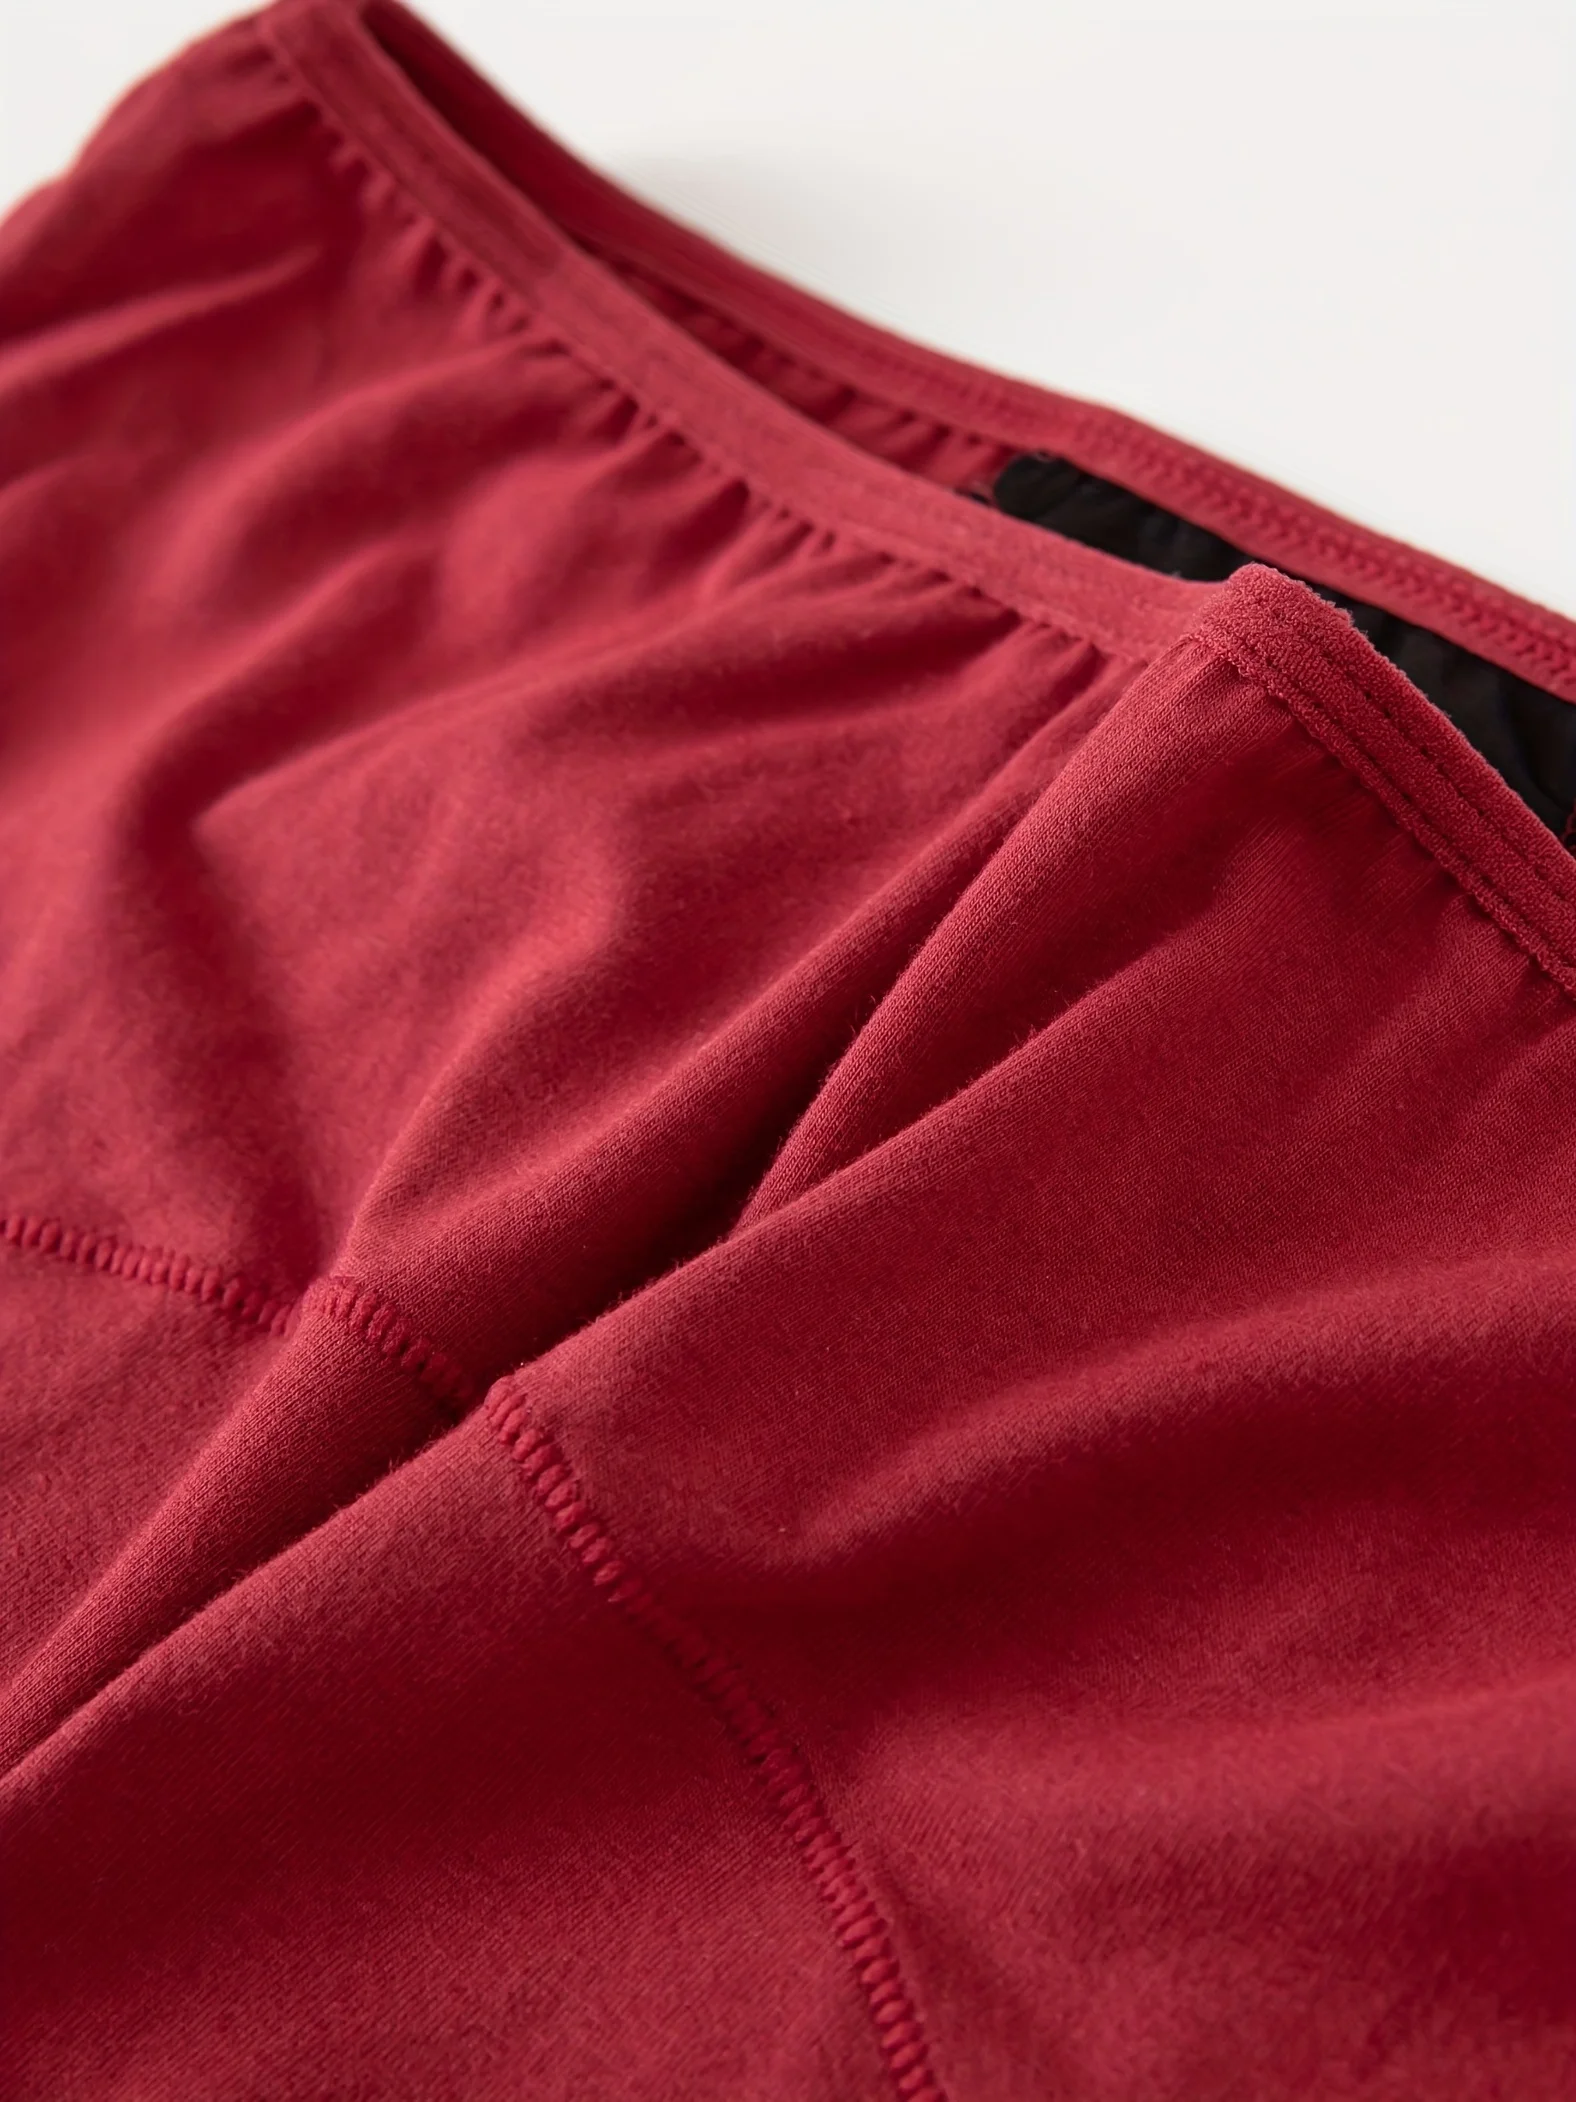 4 Pack Panties Set Comfortable & Breathable Elastic Low Waist Cotton Intimates Briefs  Women's Lingerie & Underwear